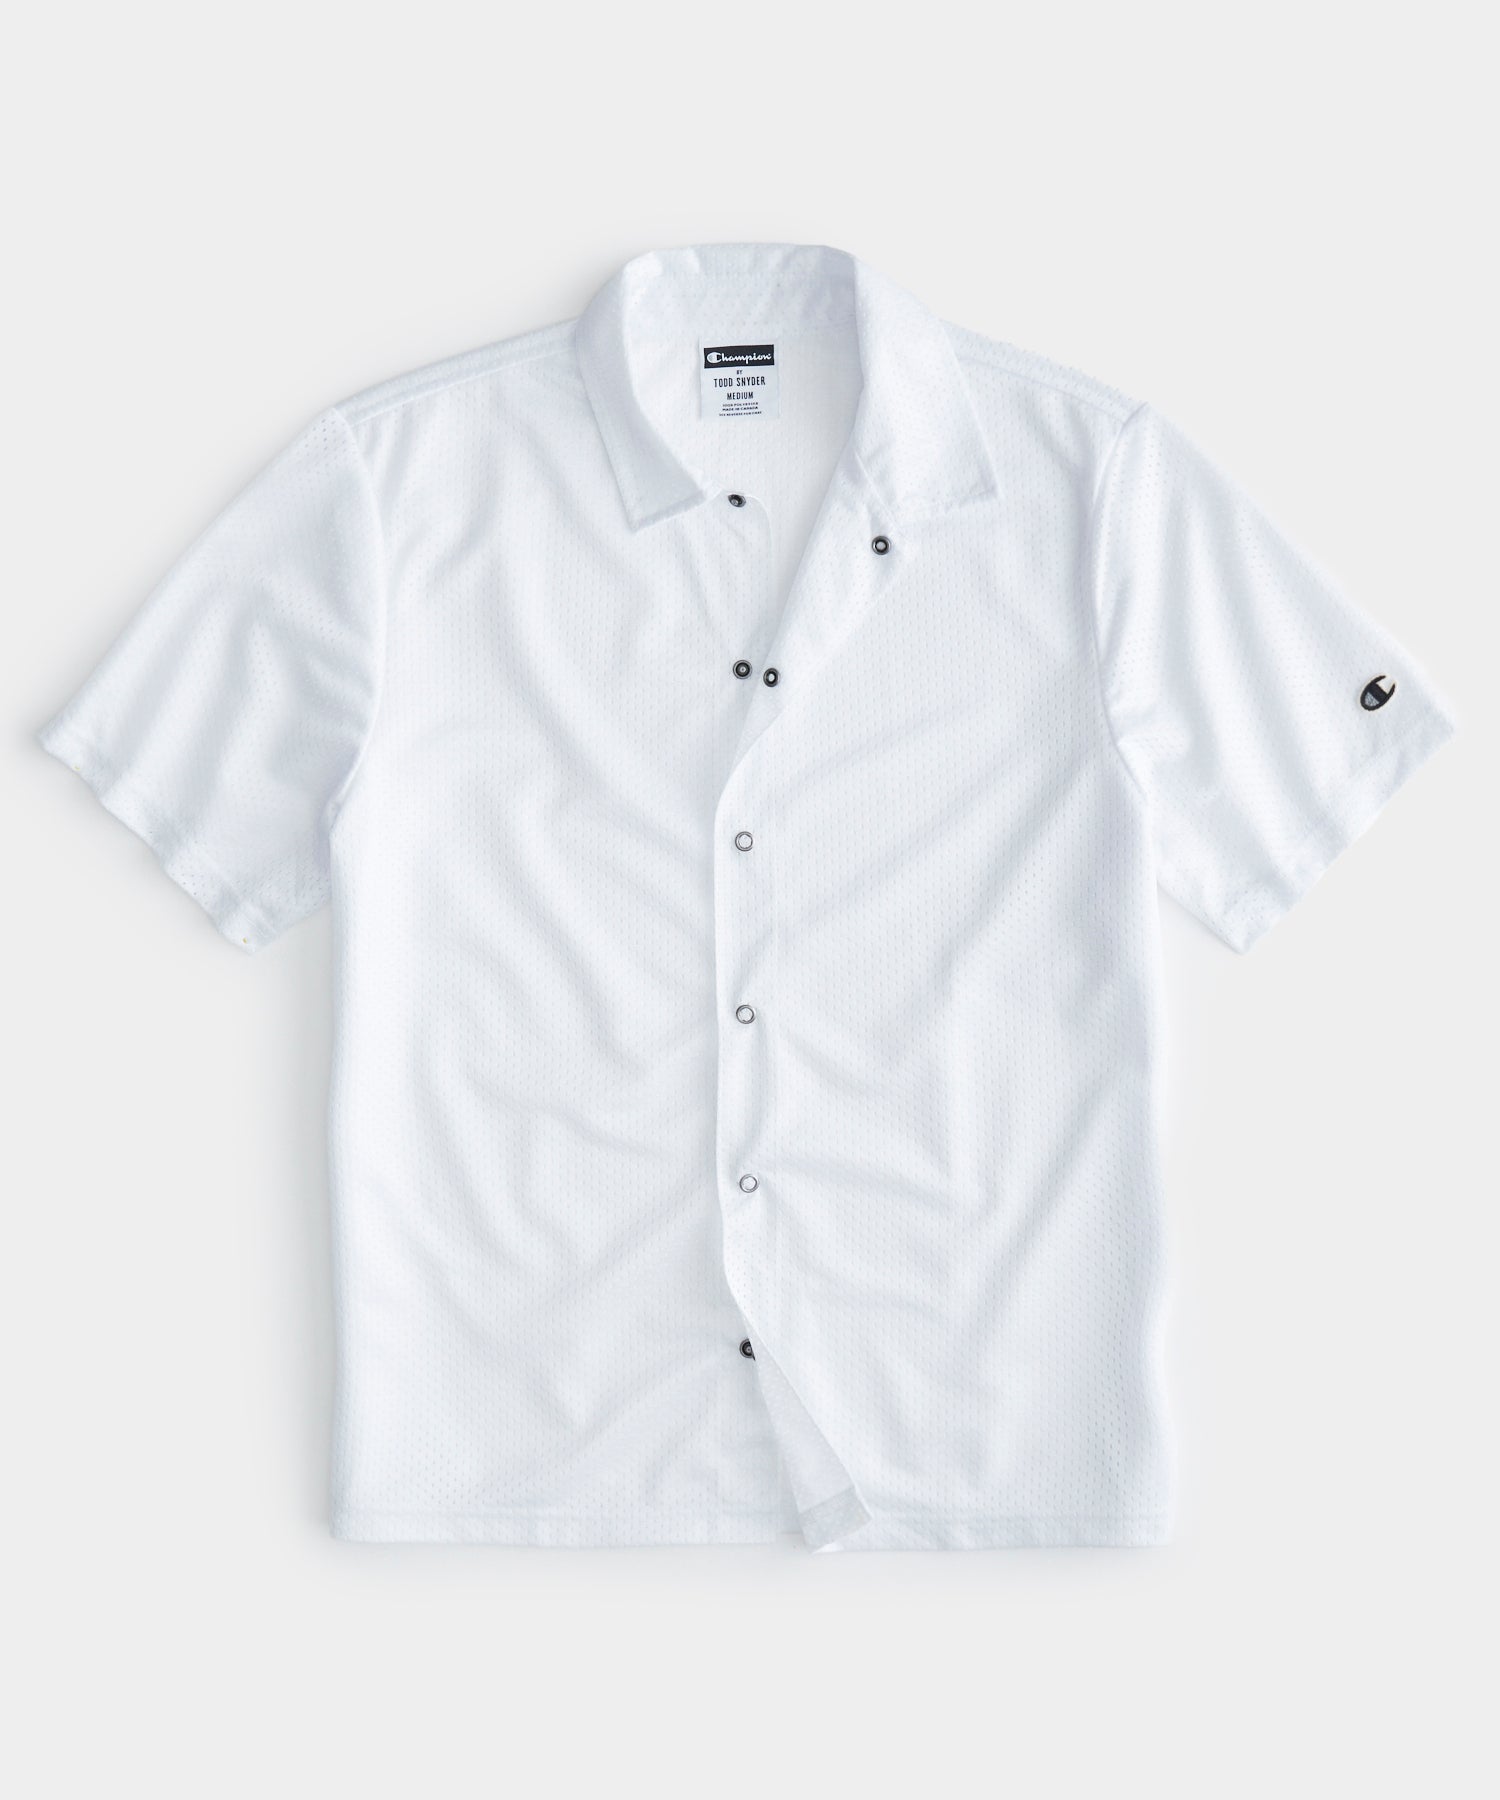 Mesh Shirt in New White